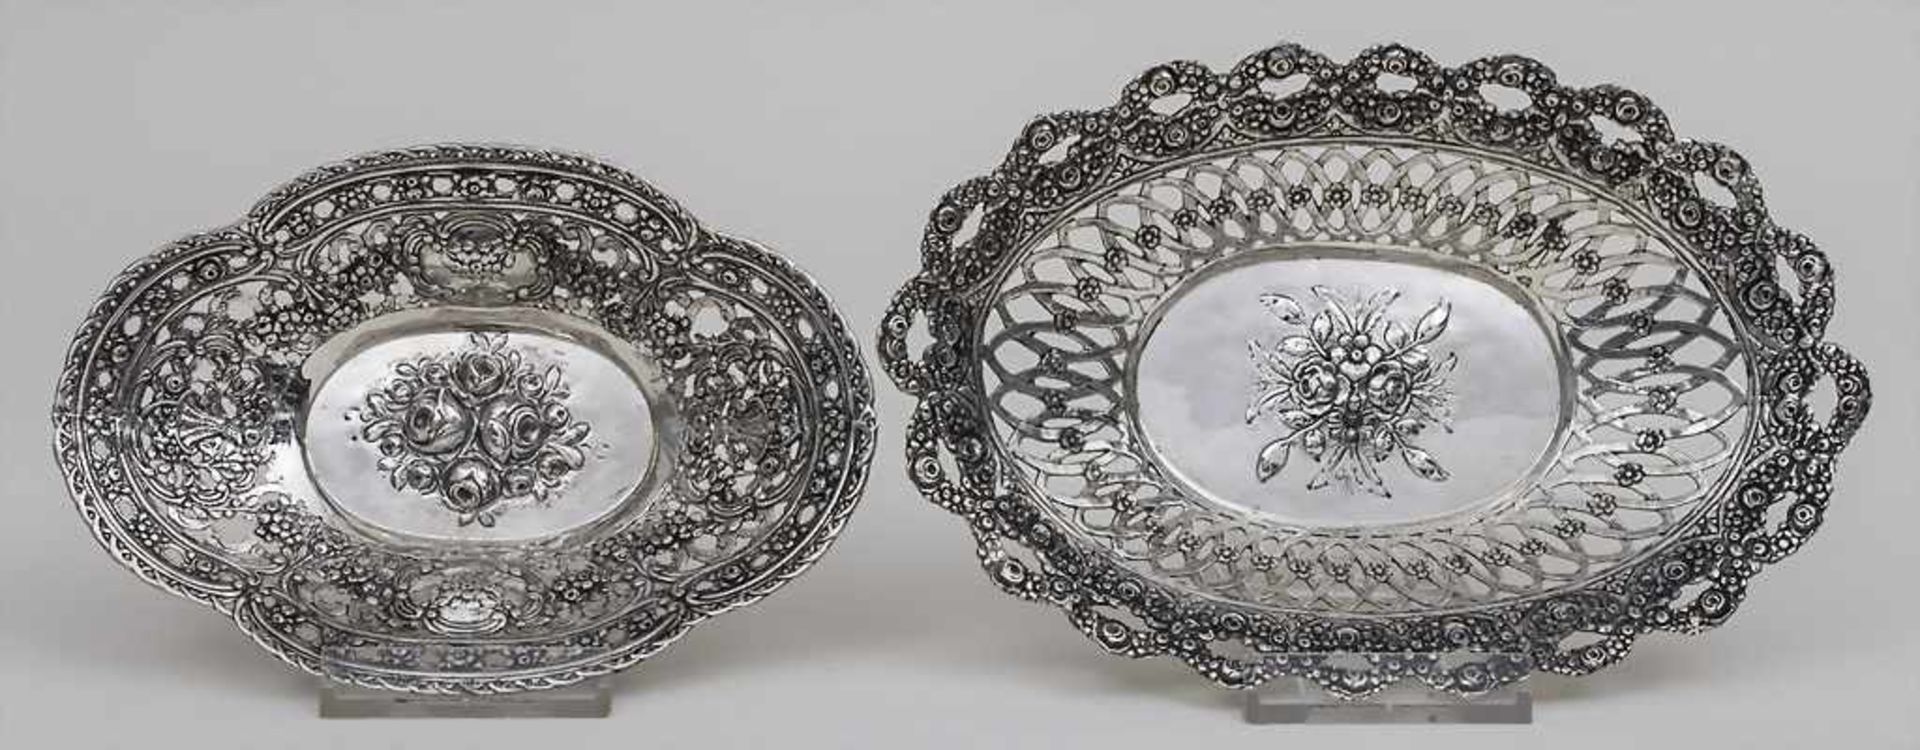 2 Schälchen mit Blumendekor / 2 bowls with flowers, 19. Jh. Punzierung: Silber gestempelt '800',